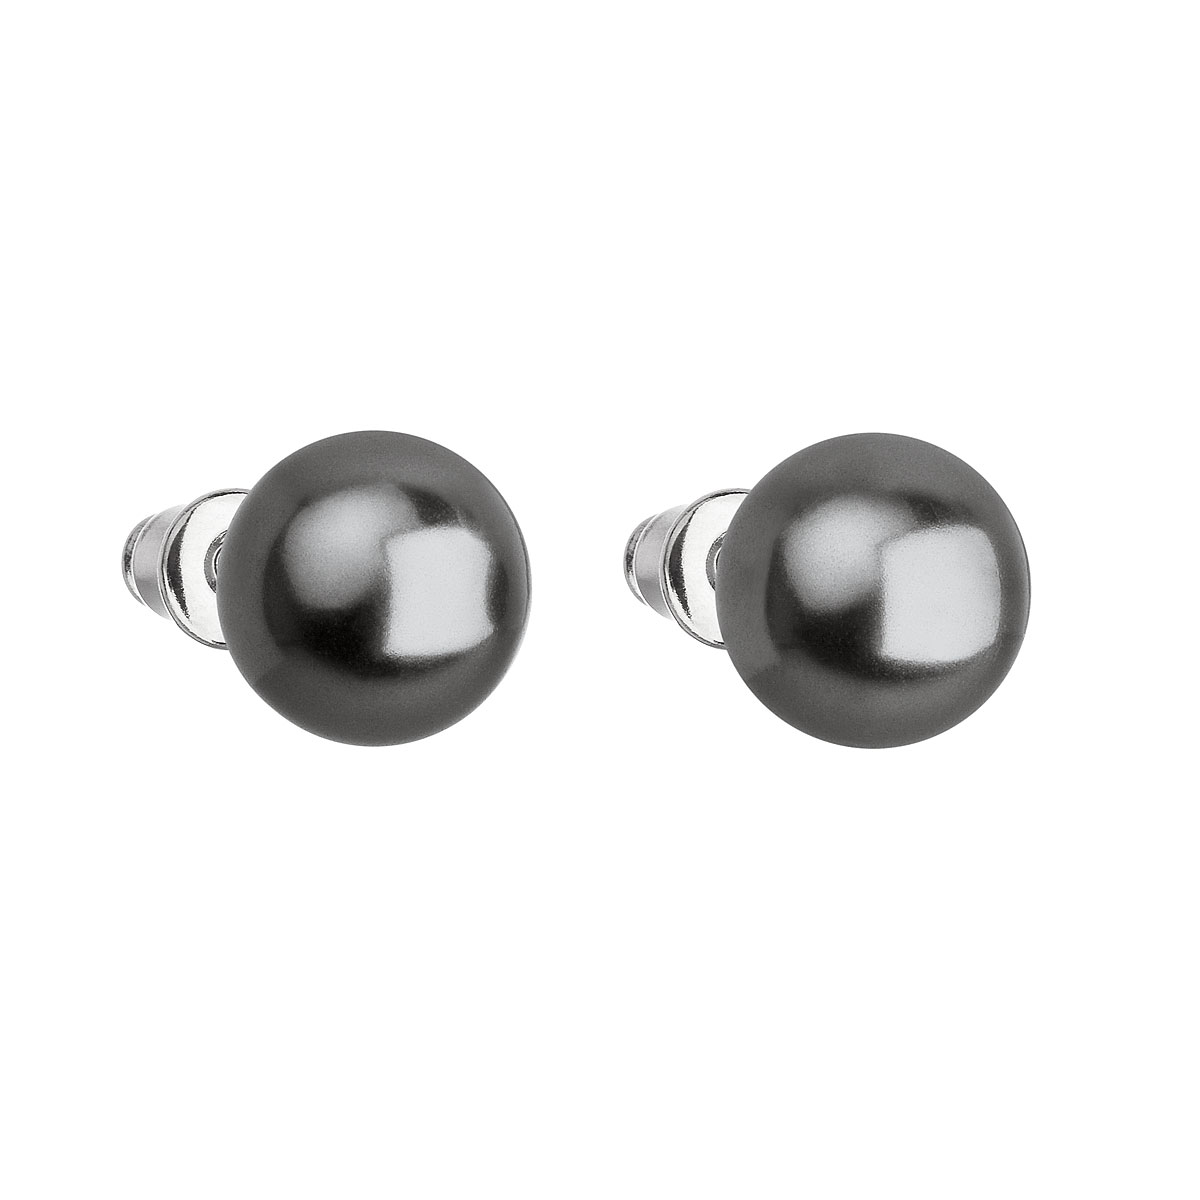 Evolution Group Náušnice bižuterie s perlou šedé kulaté 71070.3